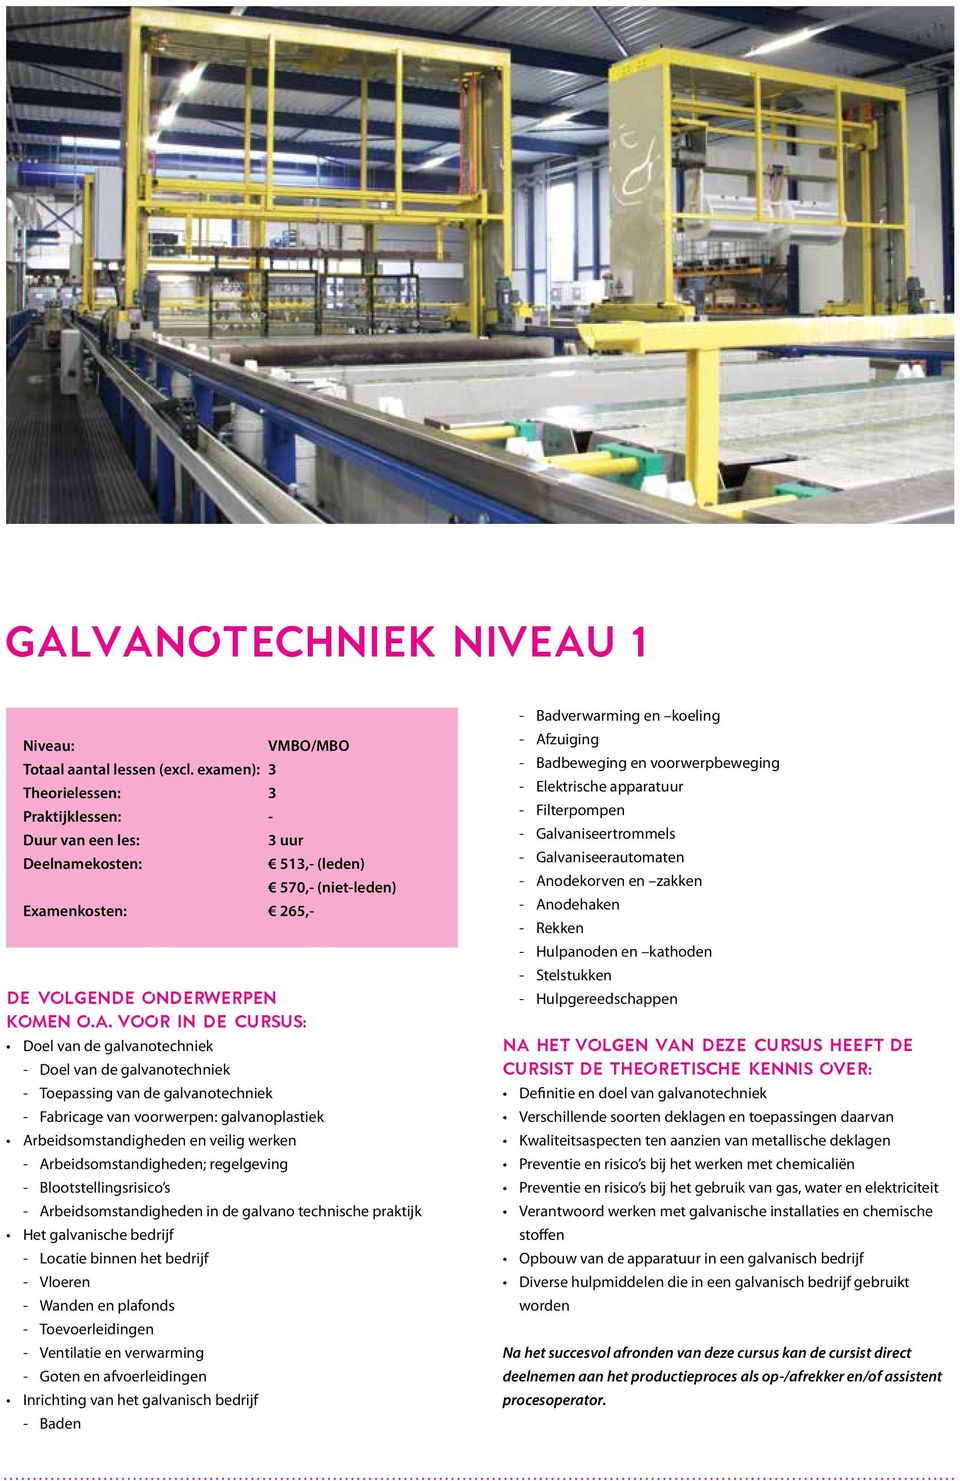 Doel van de galvanotechniek - Toepassing van de galvanotechniek 513,- (leden) - Fabricage van voorwerpen: galvanoplastiek Arbeidsomstandigheden en veilig werken 570,- (niet-leden) -